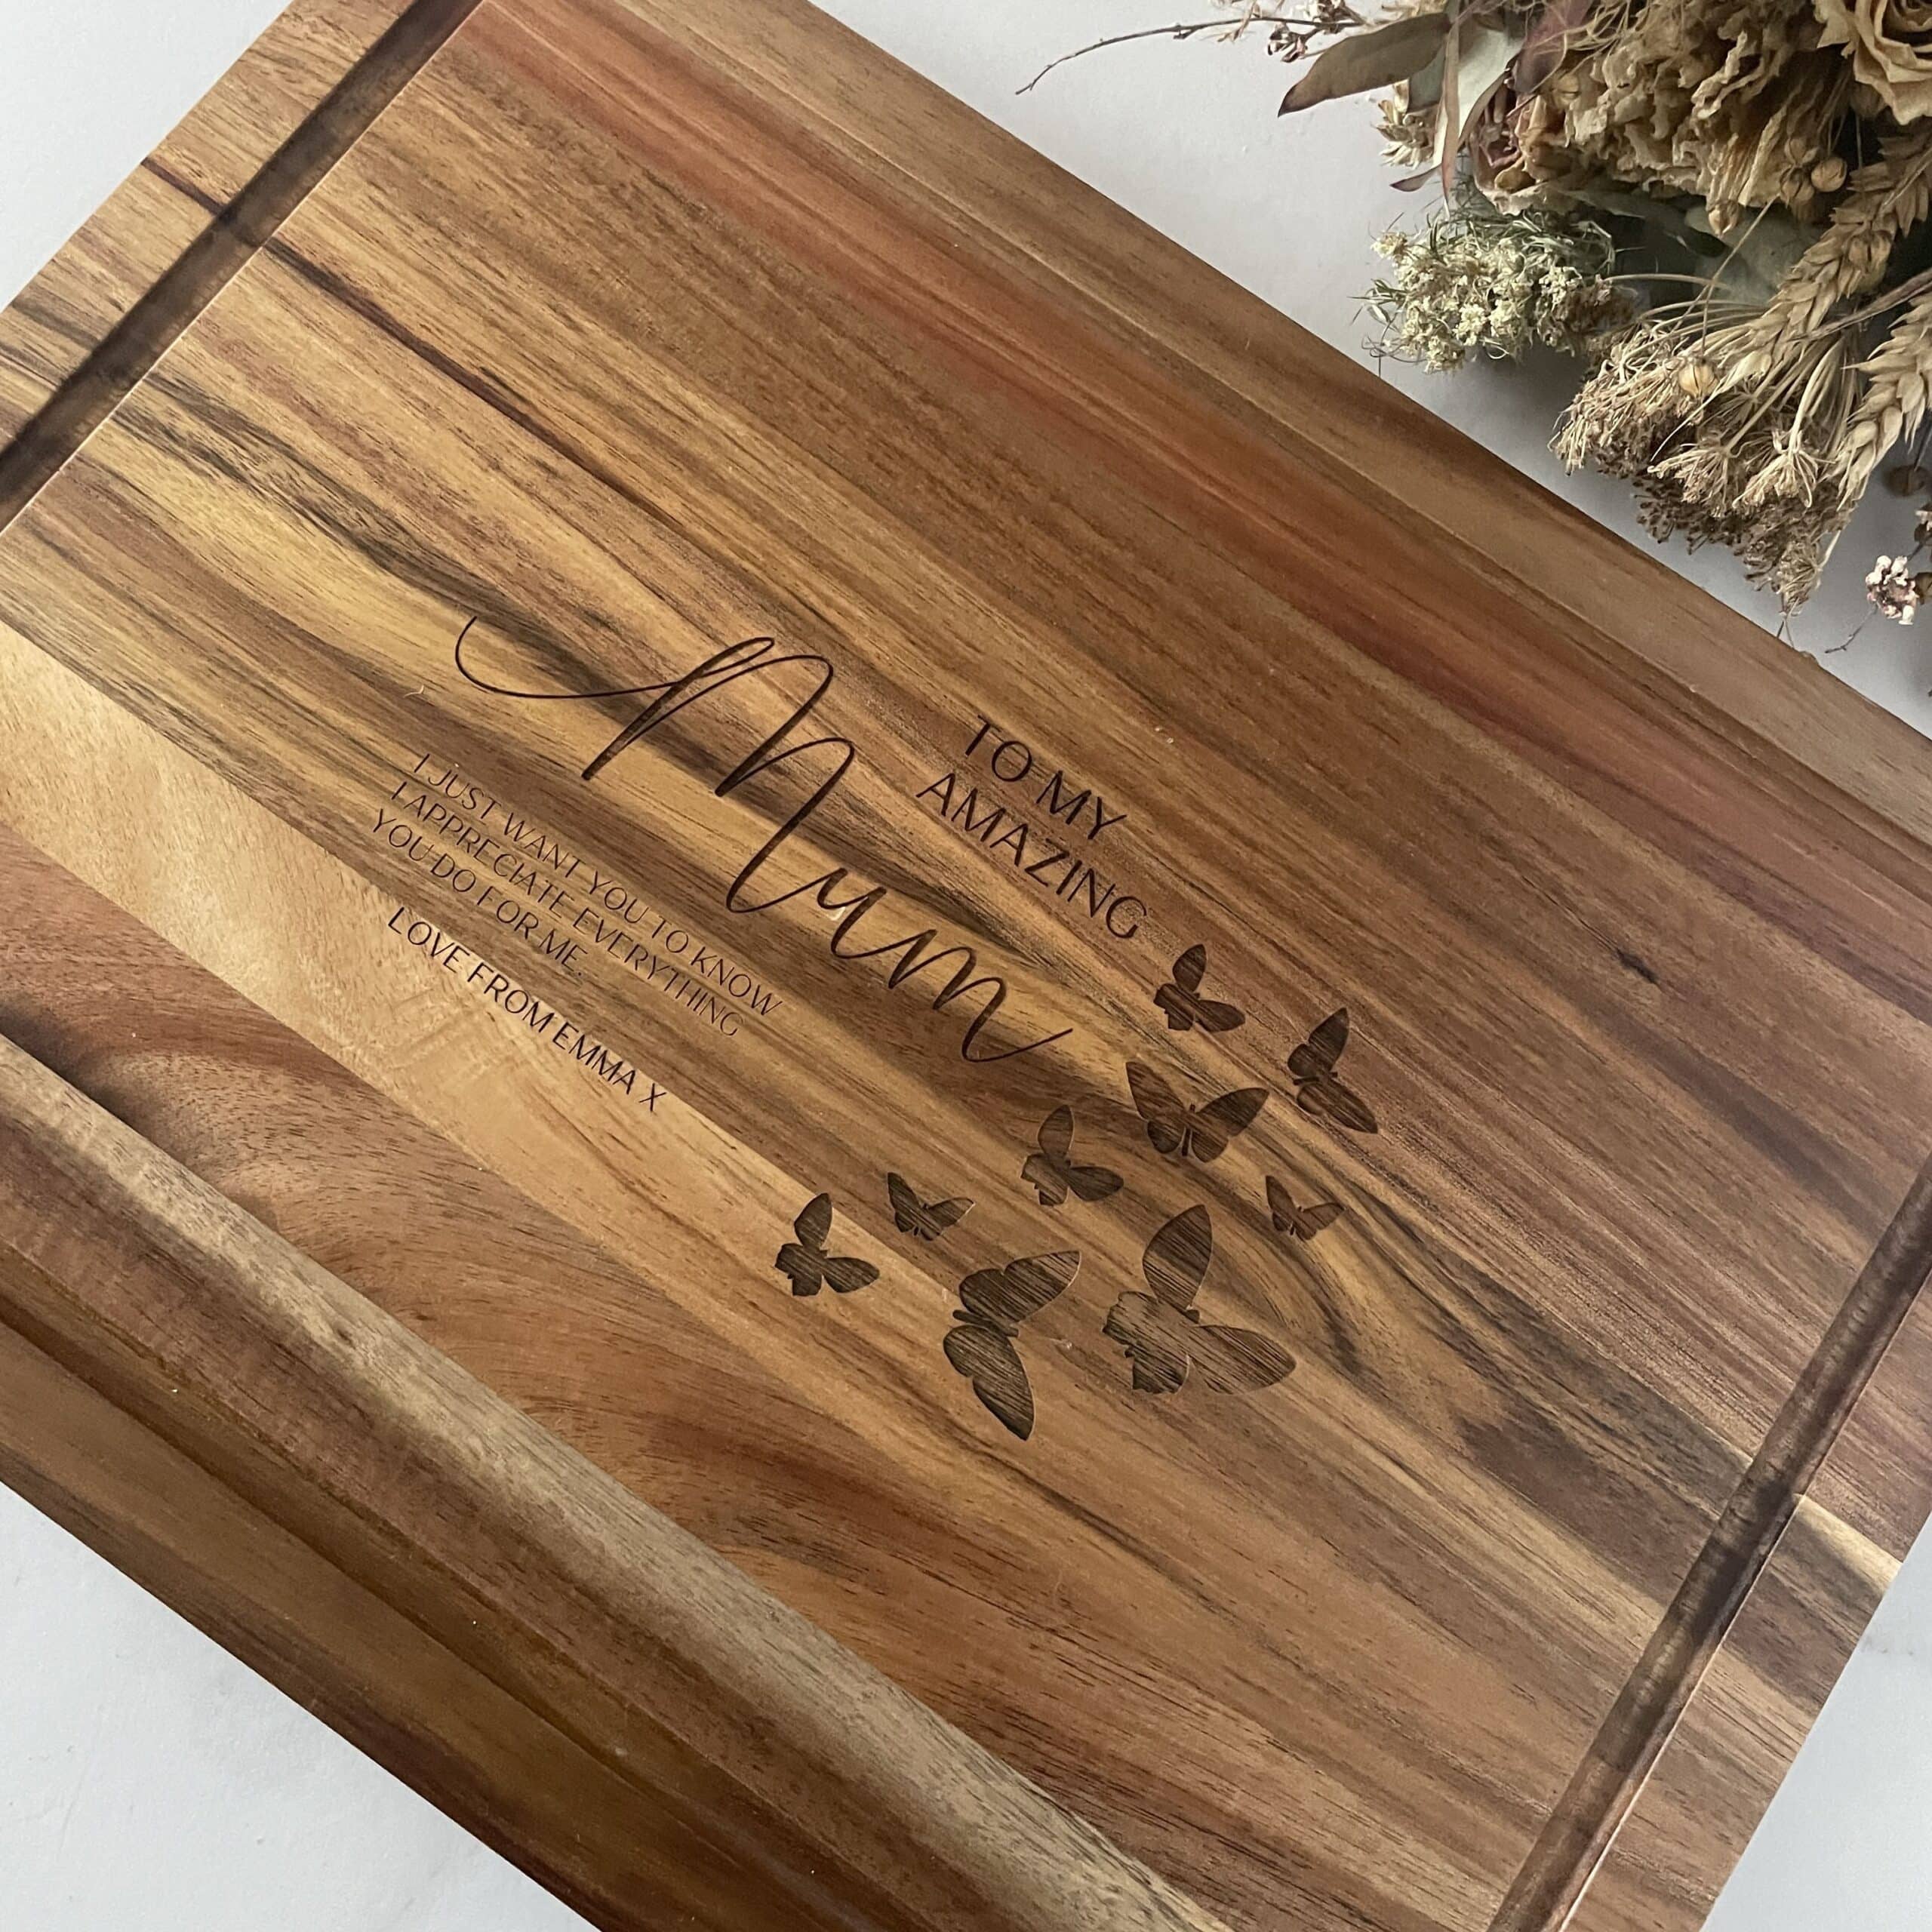 Custom Design | Engraved Cutting Board